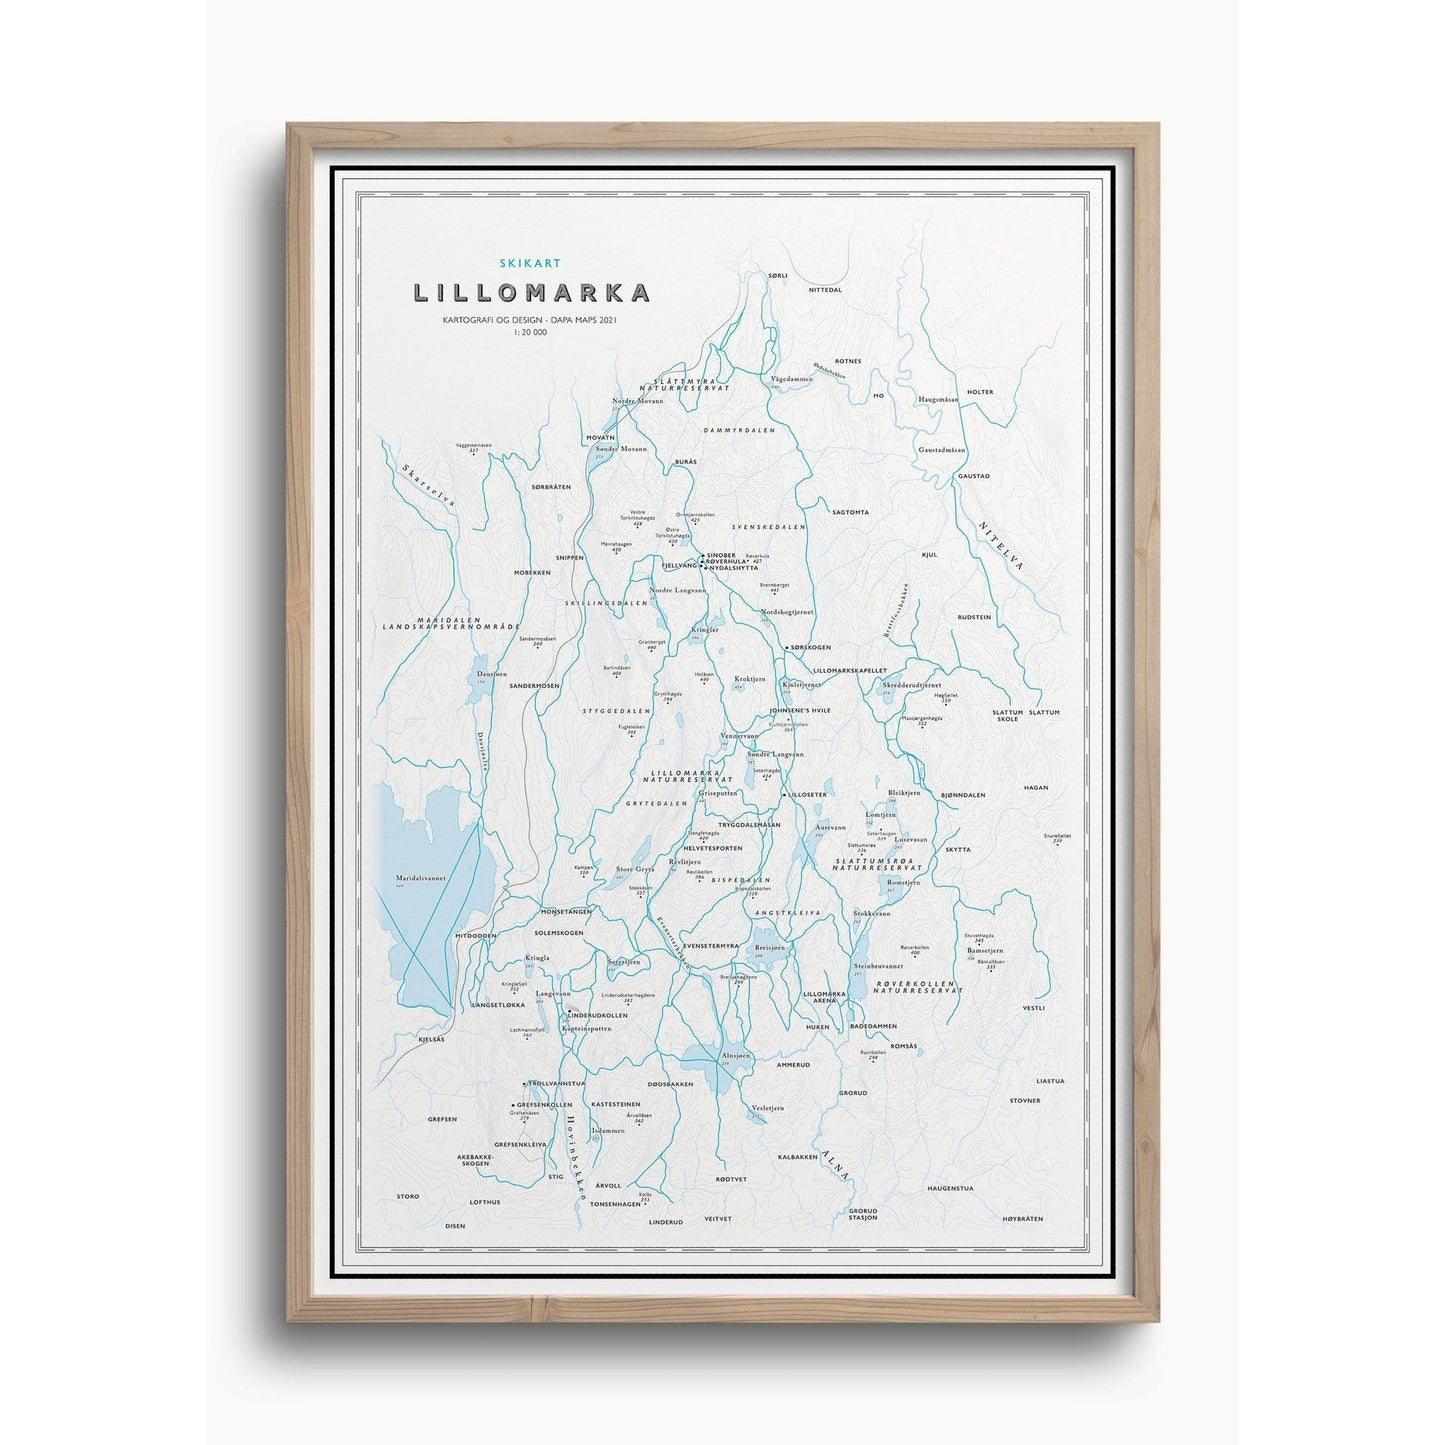 Skikart Lillomarka (50x70 cm) - Dapa Maps